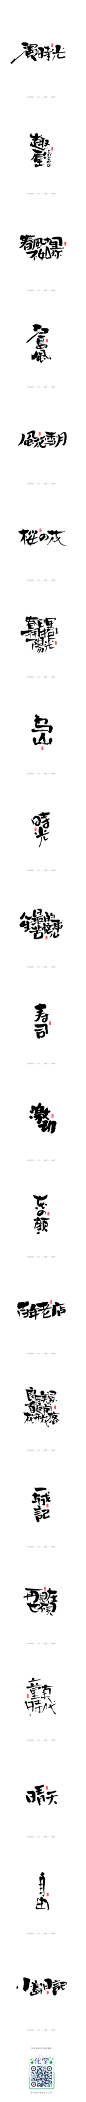 十月书法字体（下）-字体传奇网-中国首个字体品牌设计师交流网,十月书法字体（下）-字体传奇网-中国首个字体品牌设计师交流网